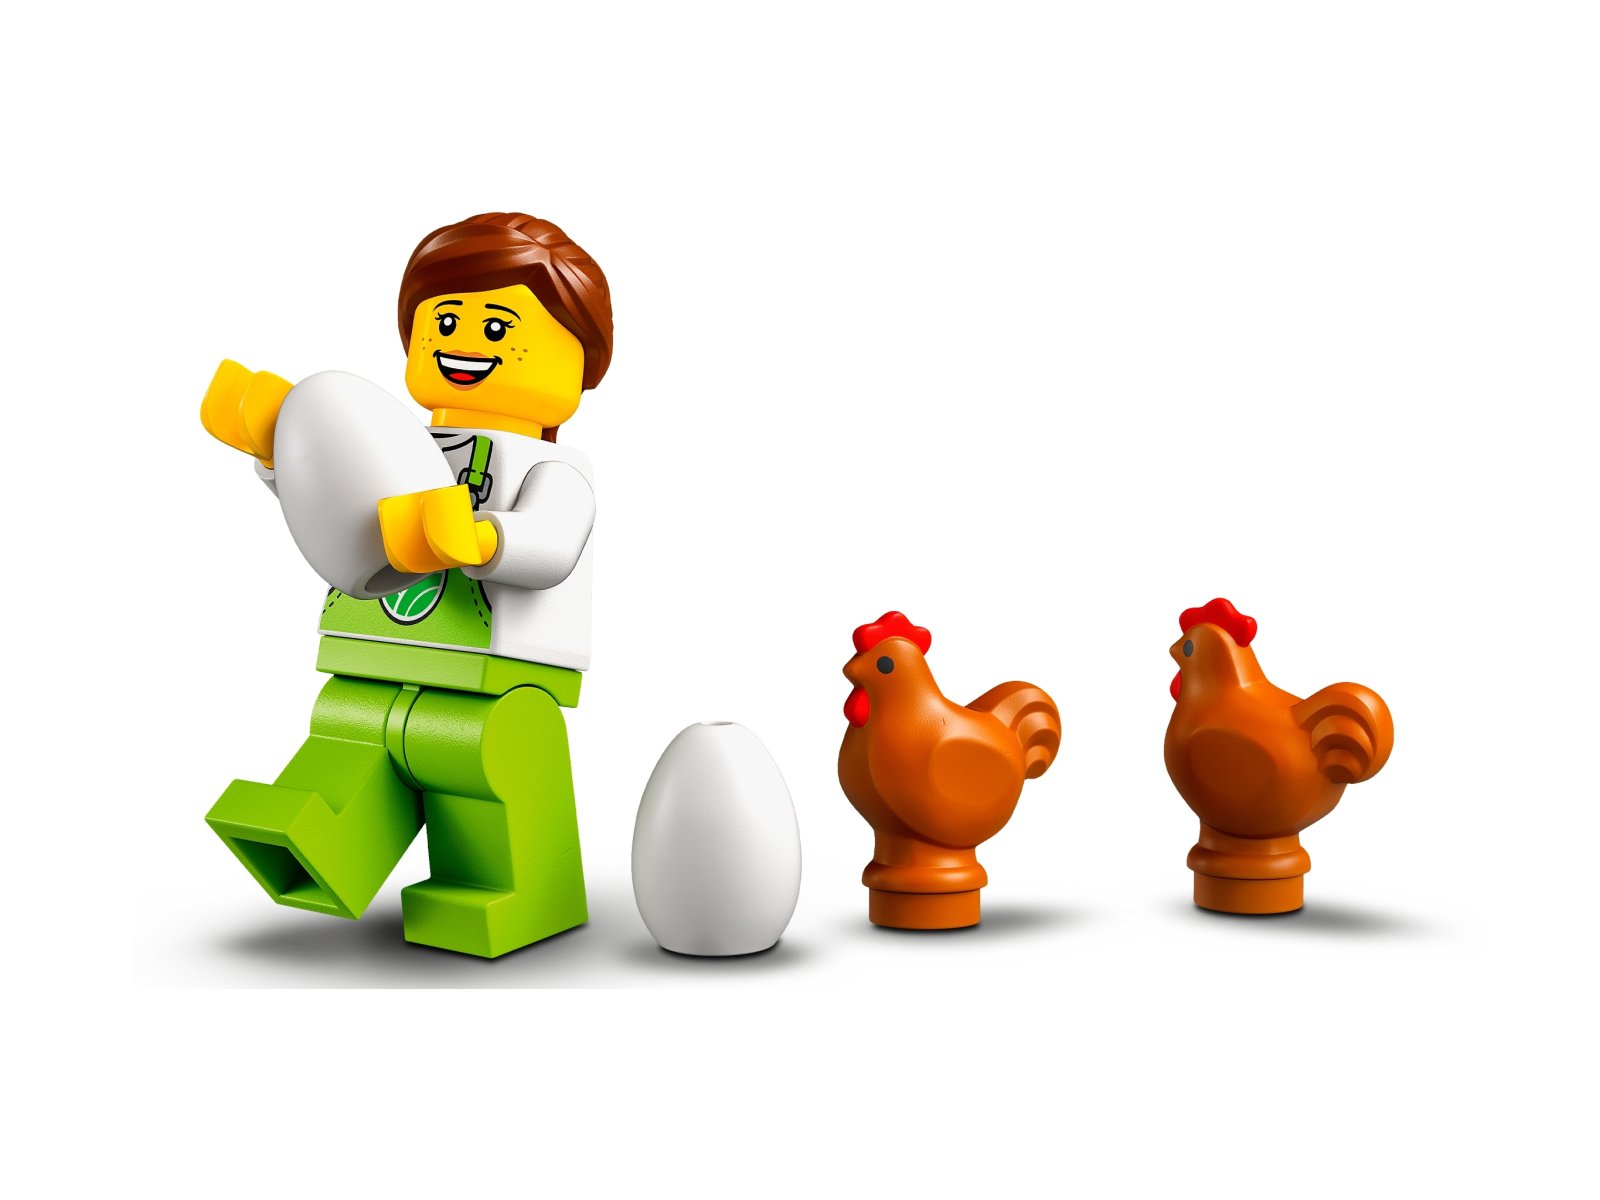 LEGO 60344 Kurnik z kurczakami